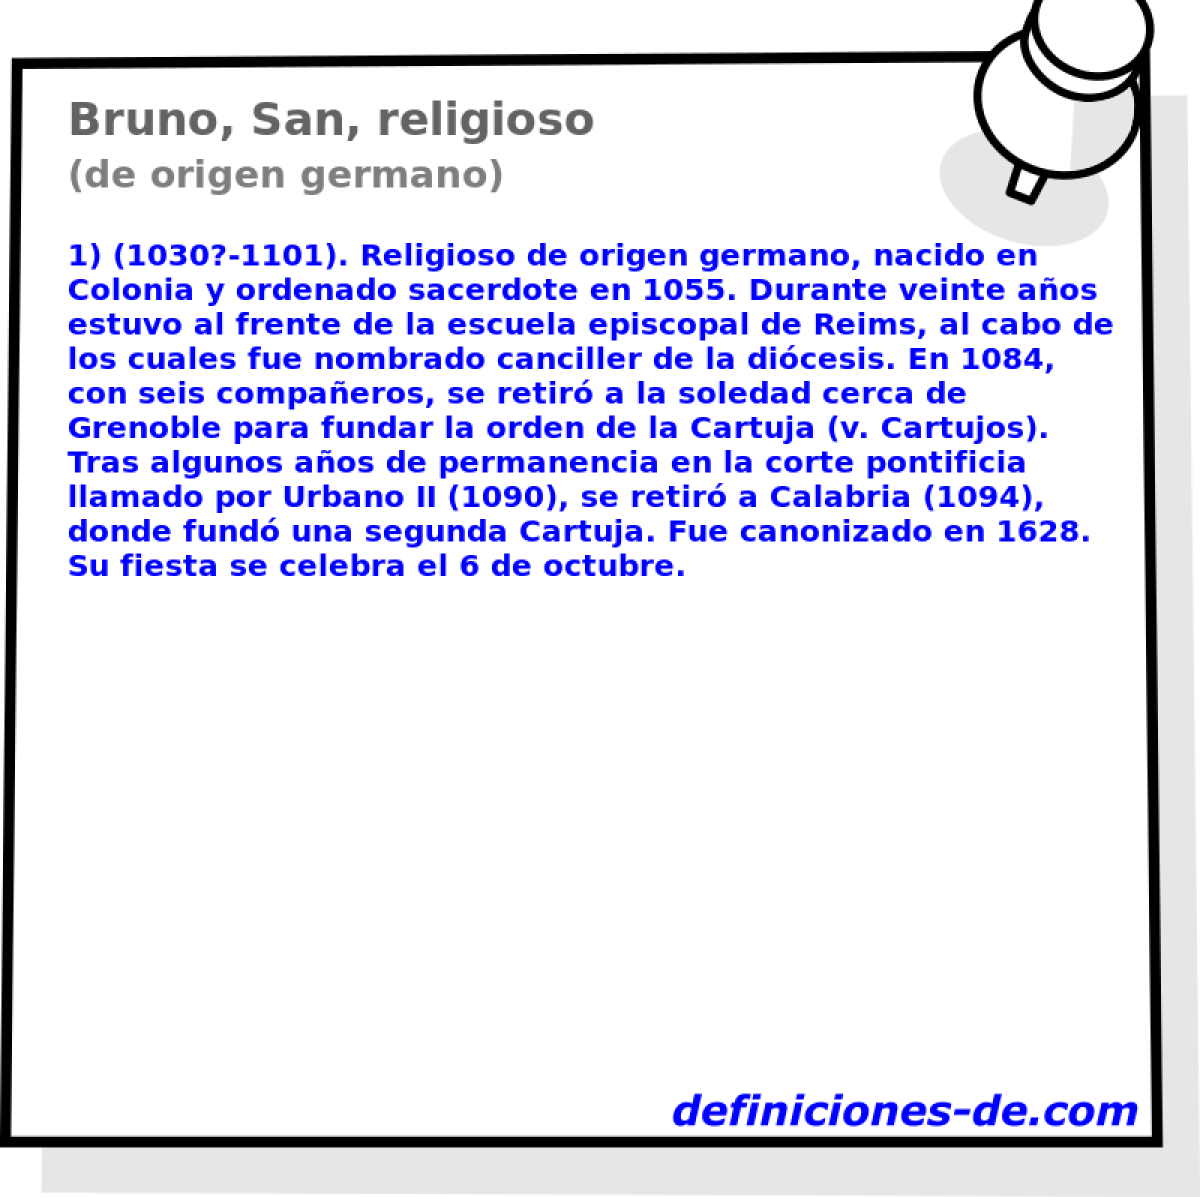 Bruno, San, religioso (de origen germano)